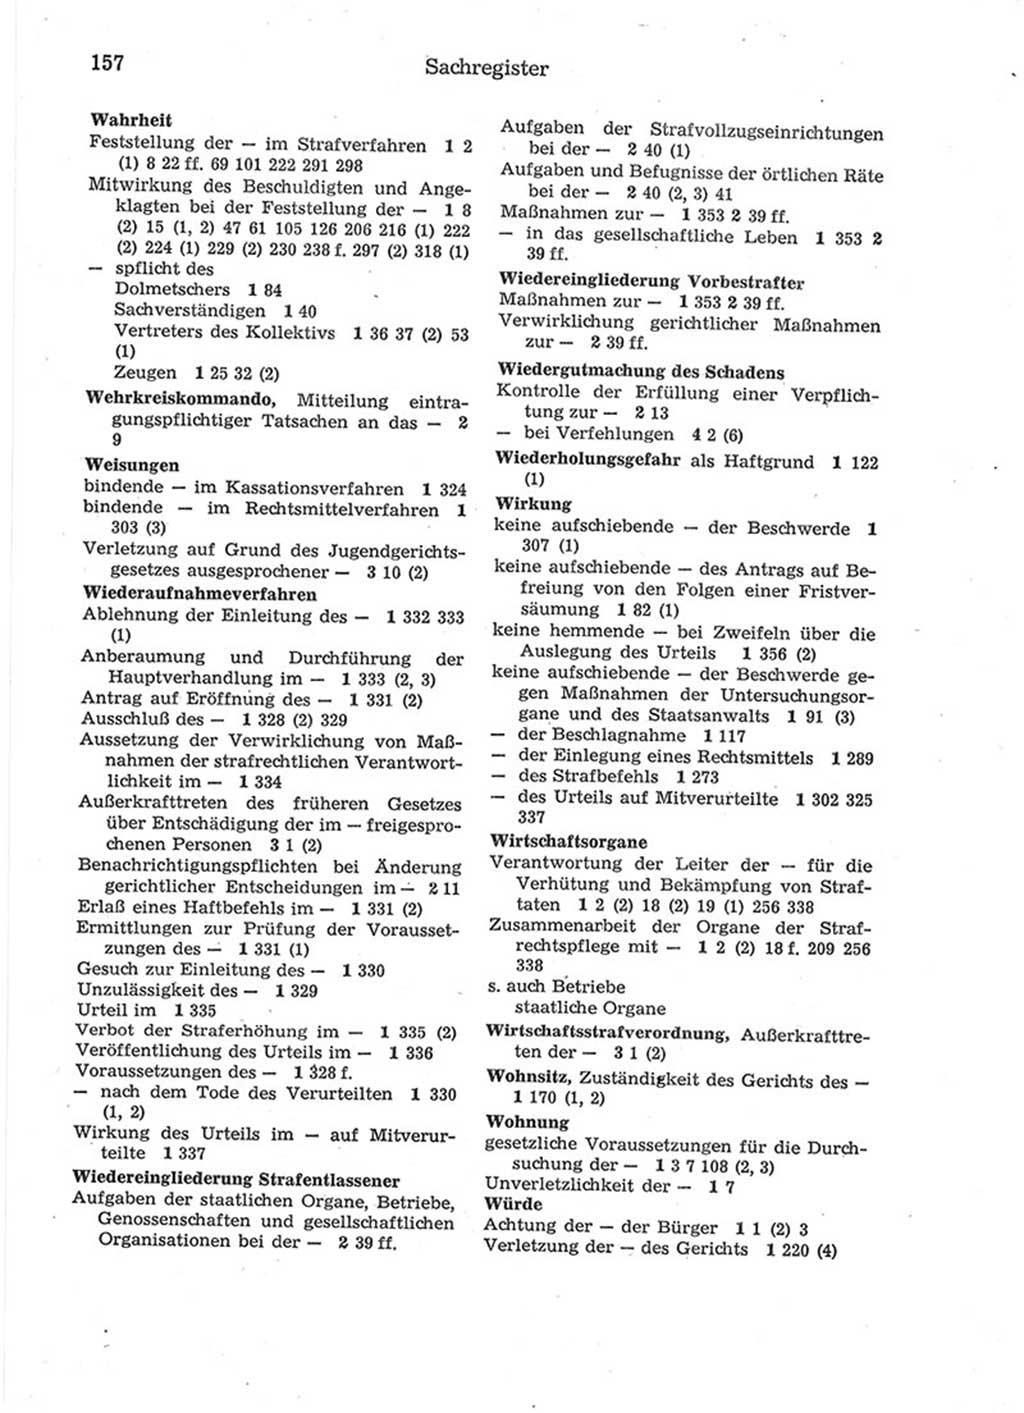 Strafprozeßordnung (StPO) der Deutschen Demokratischen Republik (DDR) 1975, Seite 157 (StPO DDR 1974, S. 157)